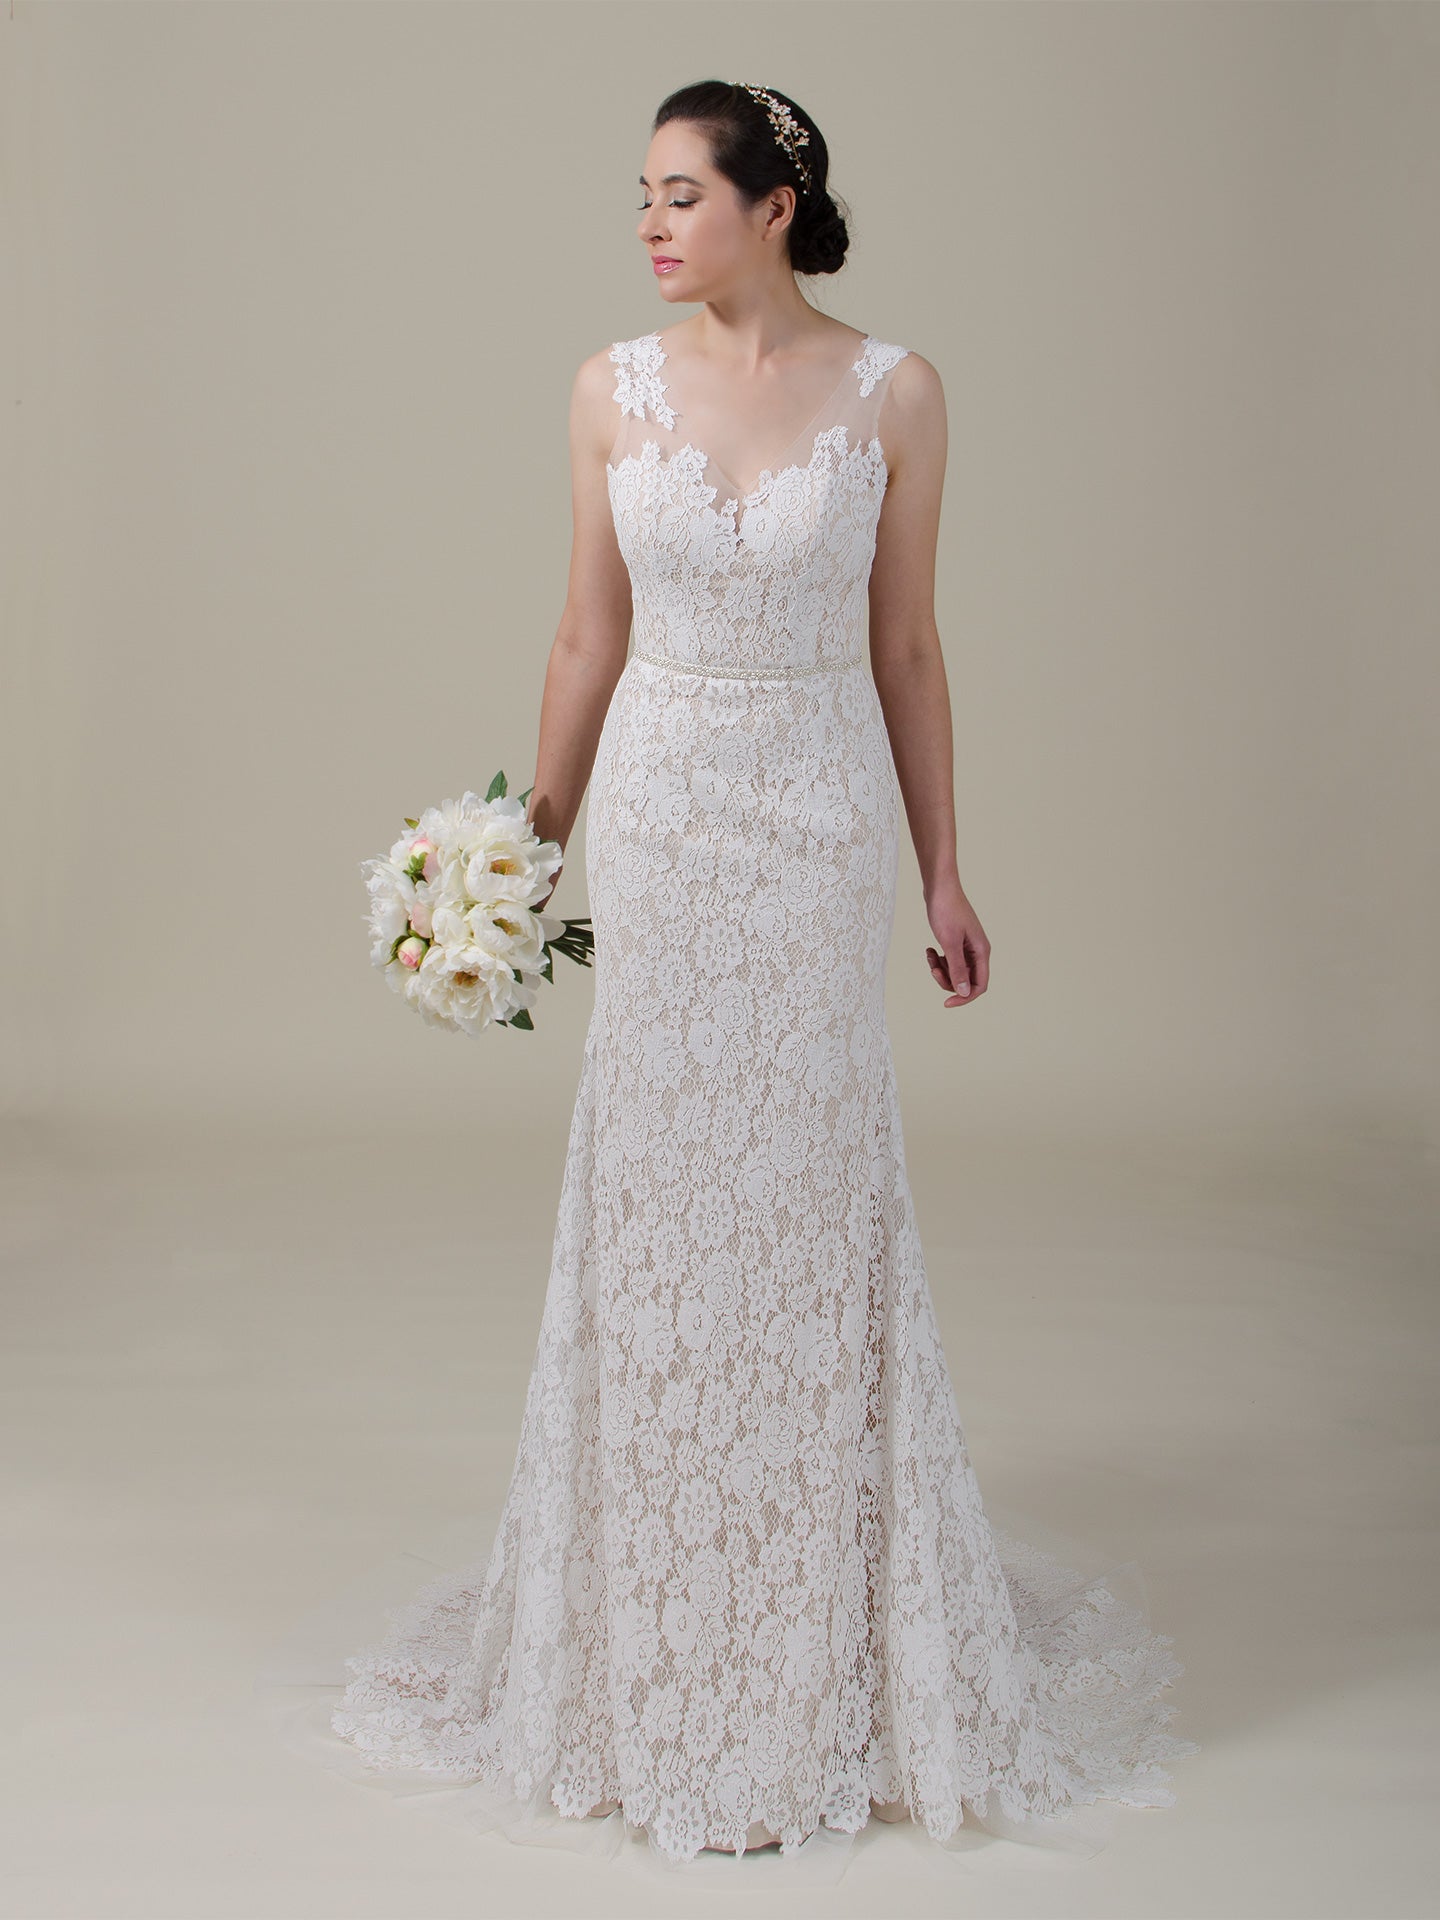 Boho lace wedding dress 4061